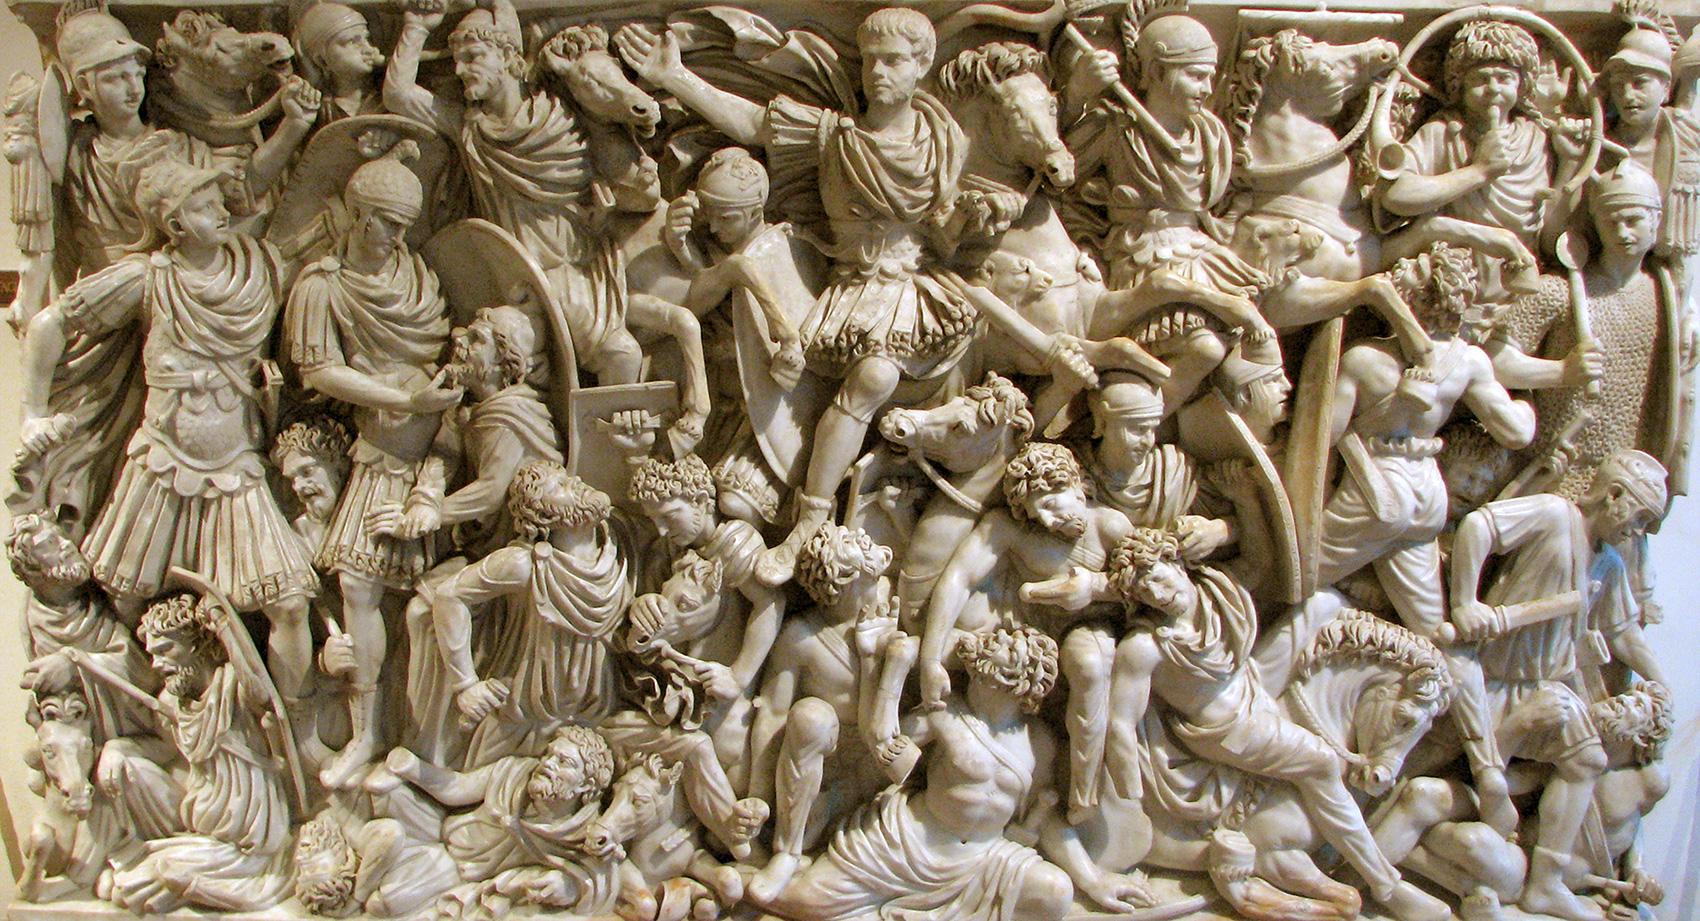 Саркофаг с изображением битвы римлян с готами и их союзниками при Абрите в 251 году н. э. В этой битве римляне потерпели одно из самых тяжелых поражений.